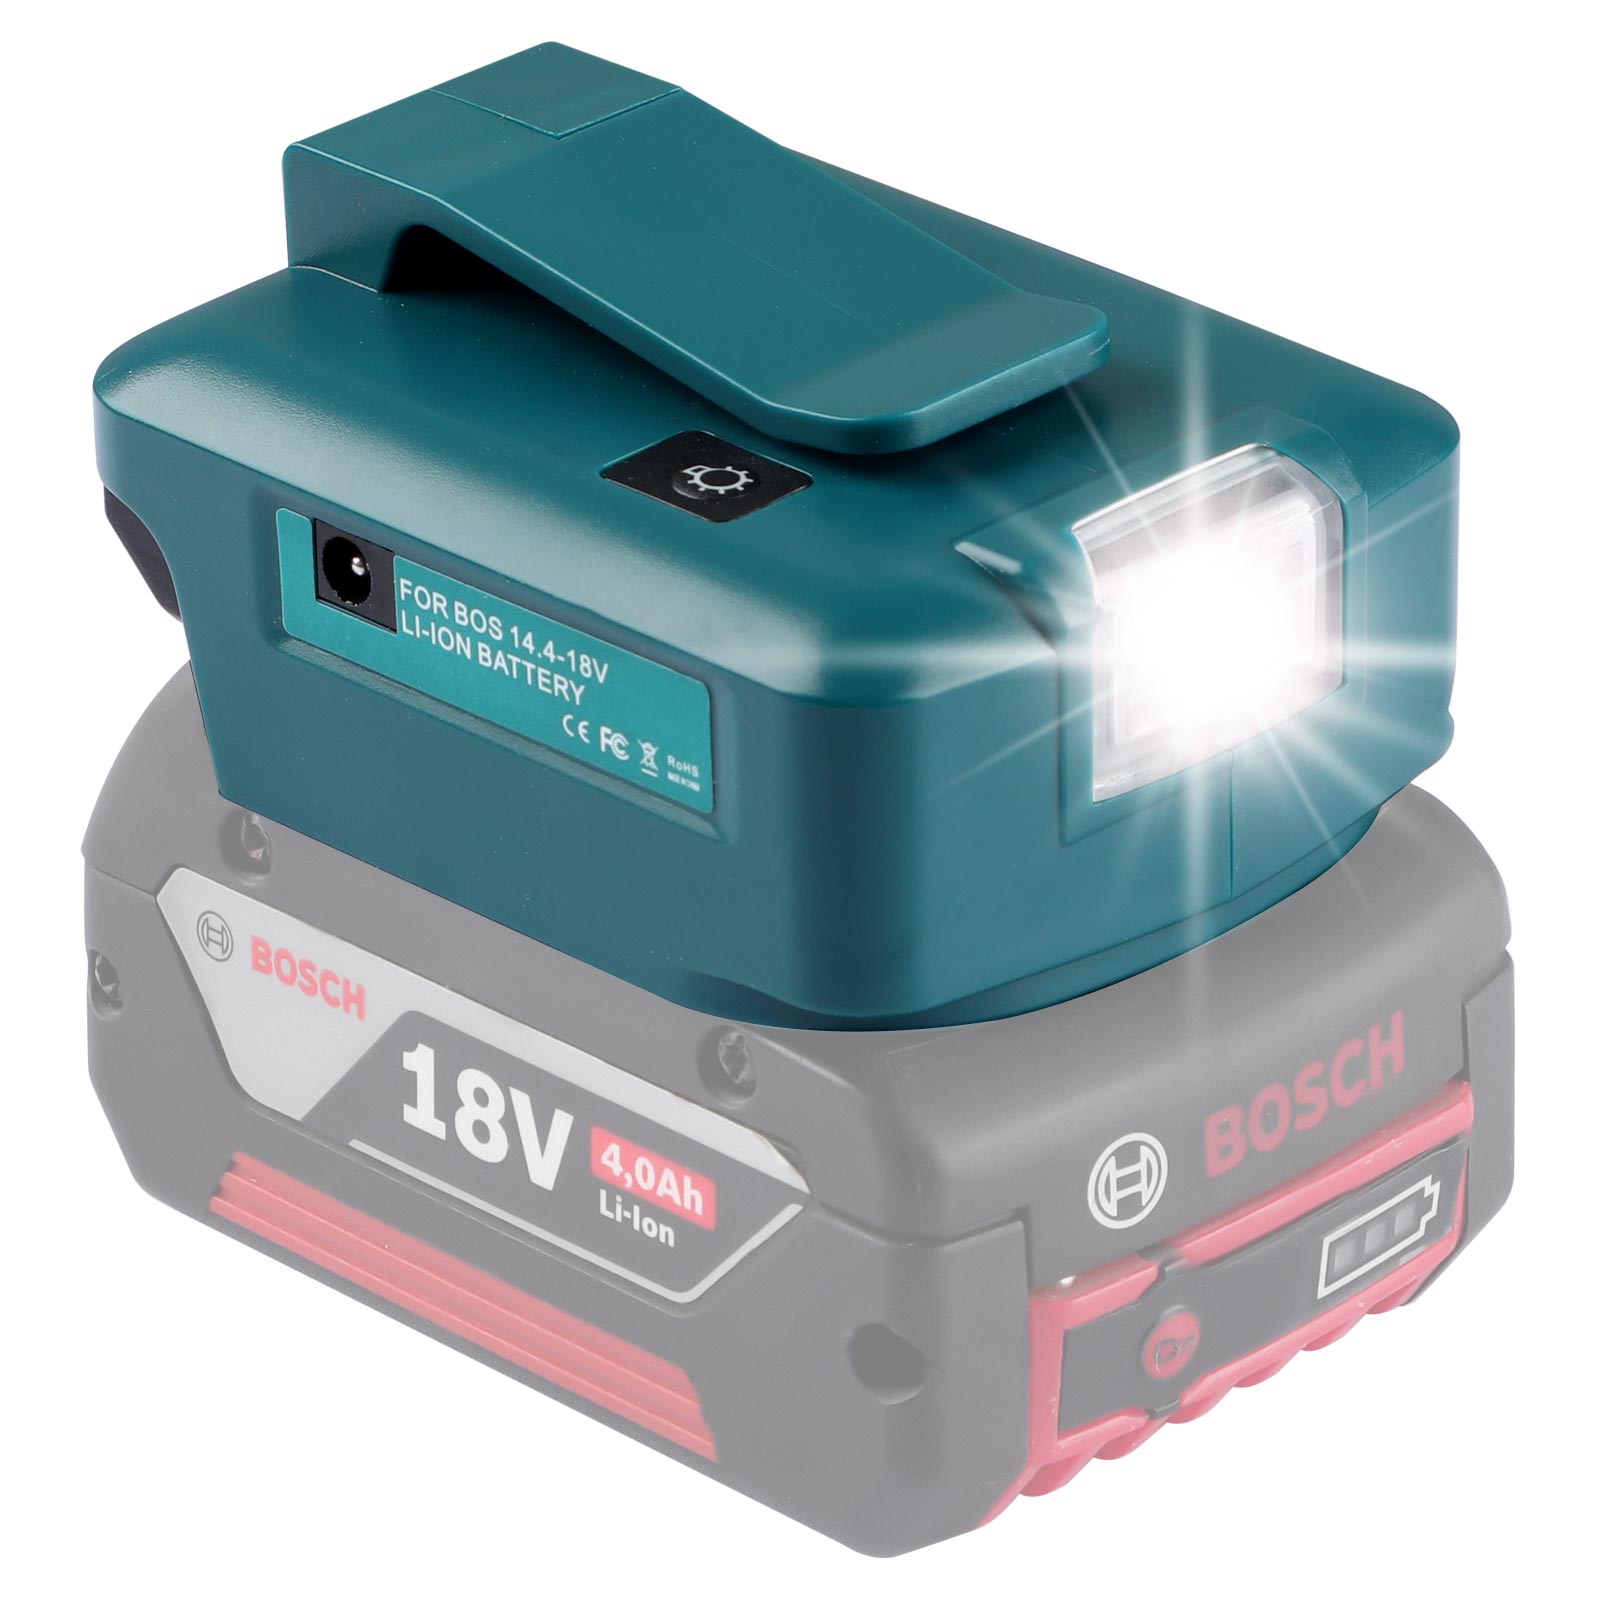 Bosch 14,4-18V lityum batareya quvvat manbai uchun doimiy port va 2 USB portli Urun batareya adapteri LED chiroq